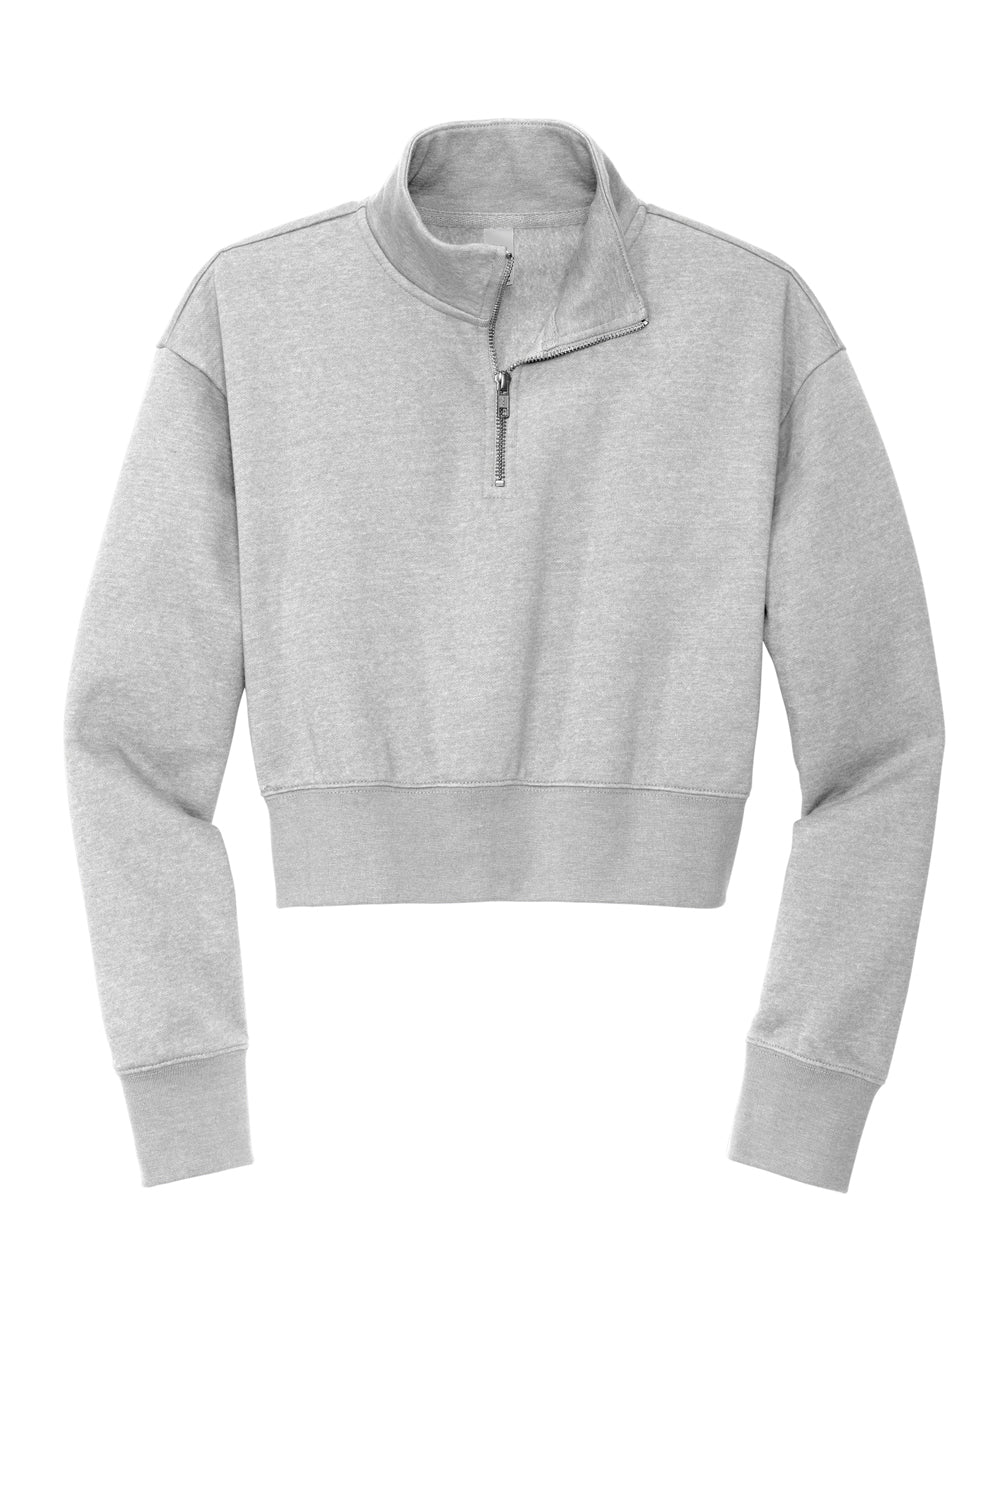 District DT6111 V.I.T. Fleece 1/4 Zip Sweatshirt Heather Light Grey Flat Front